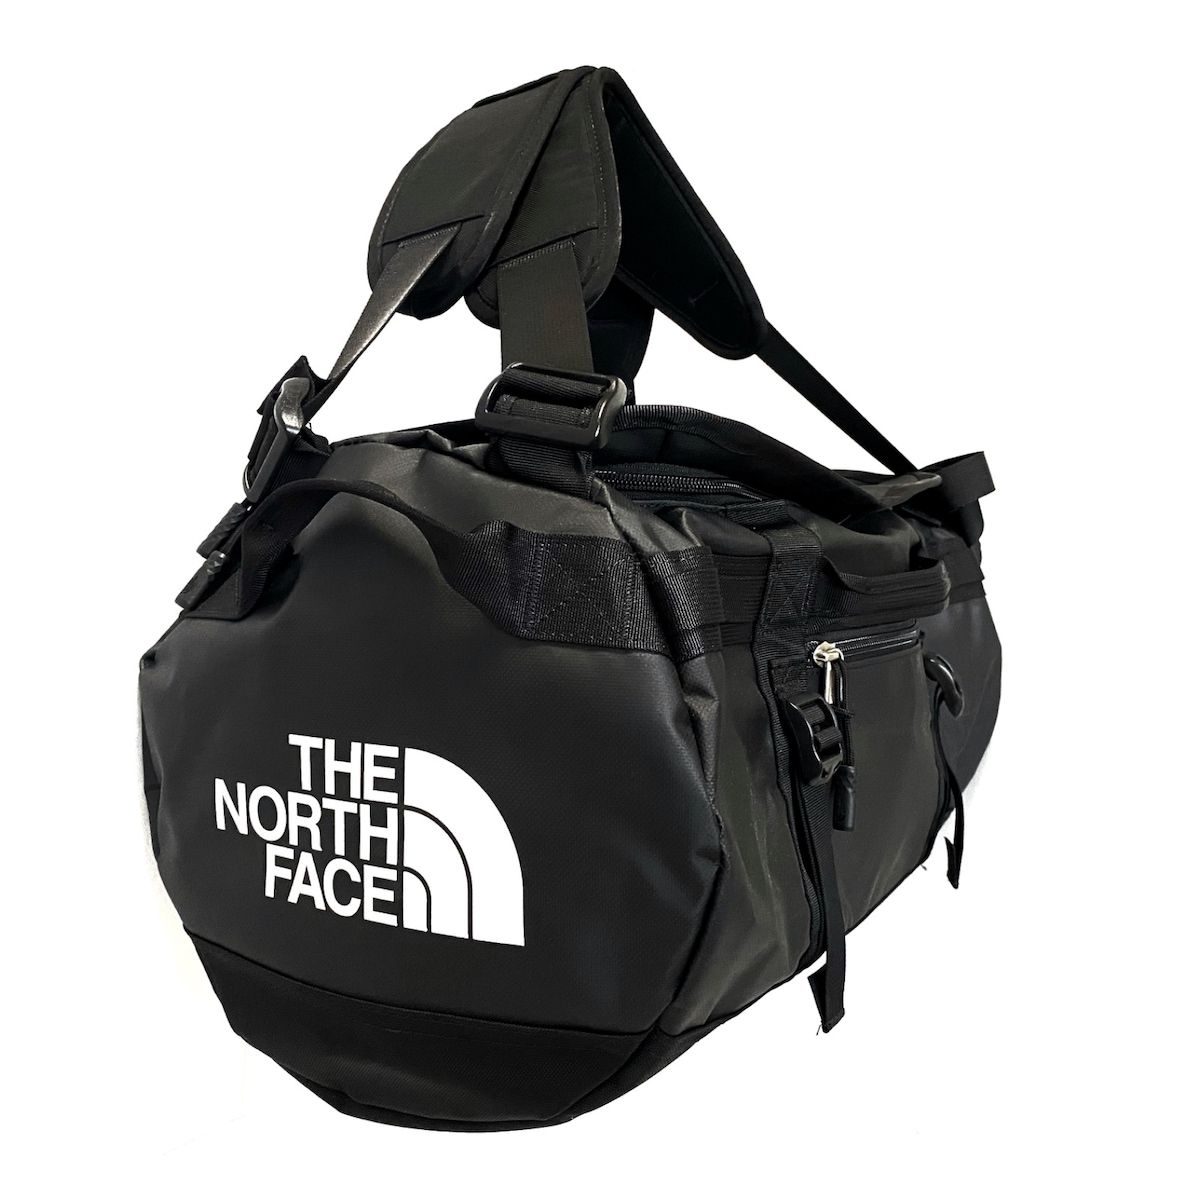 THE NORTH FACE(ノースフェイス) ボストンバッグ - NF0A52SS 黒 2way/本体ロックなし ポリエステル×ナイロン - メルカリ